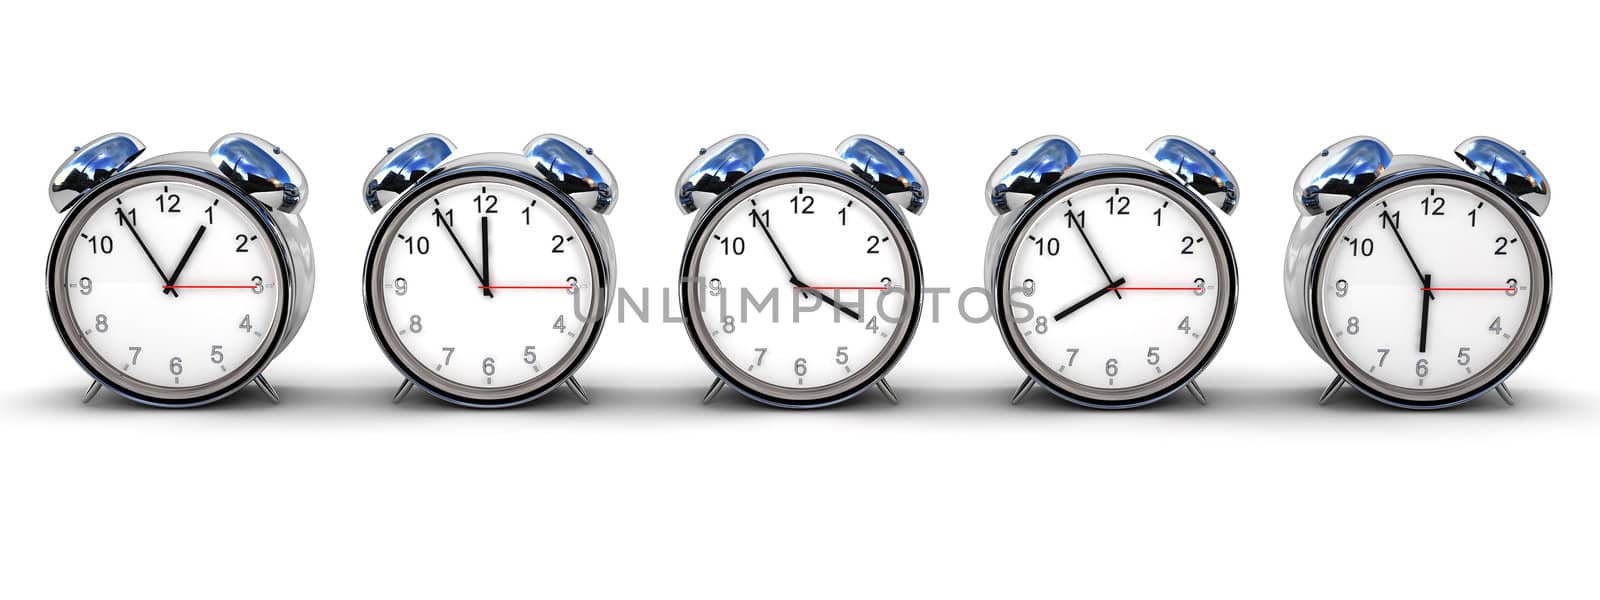 Alarm clocks by Magnum